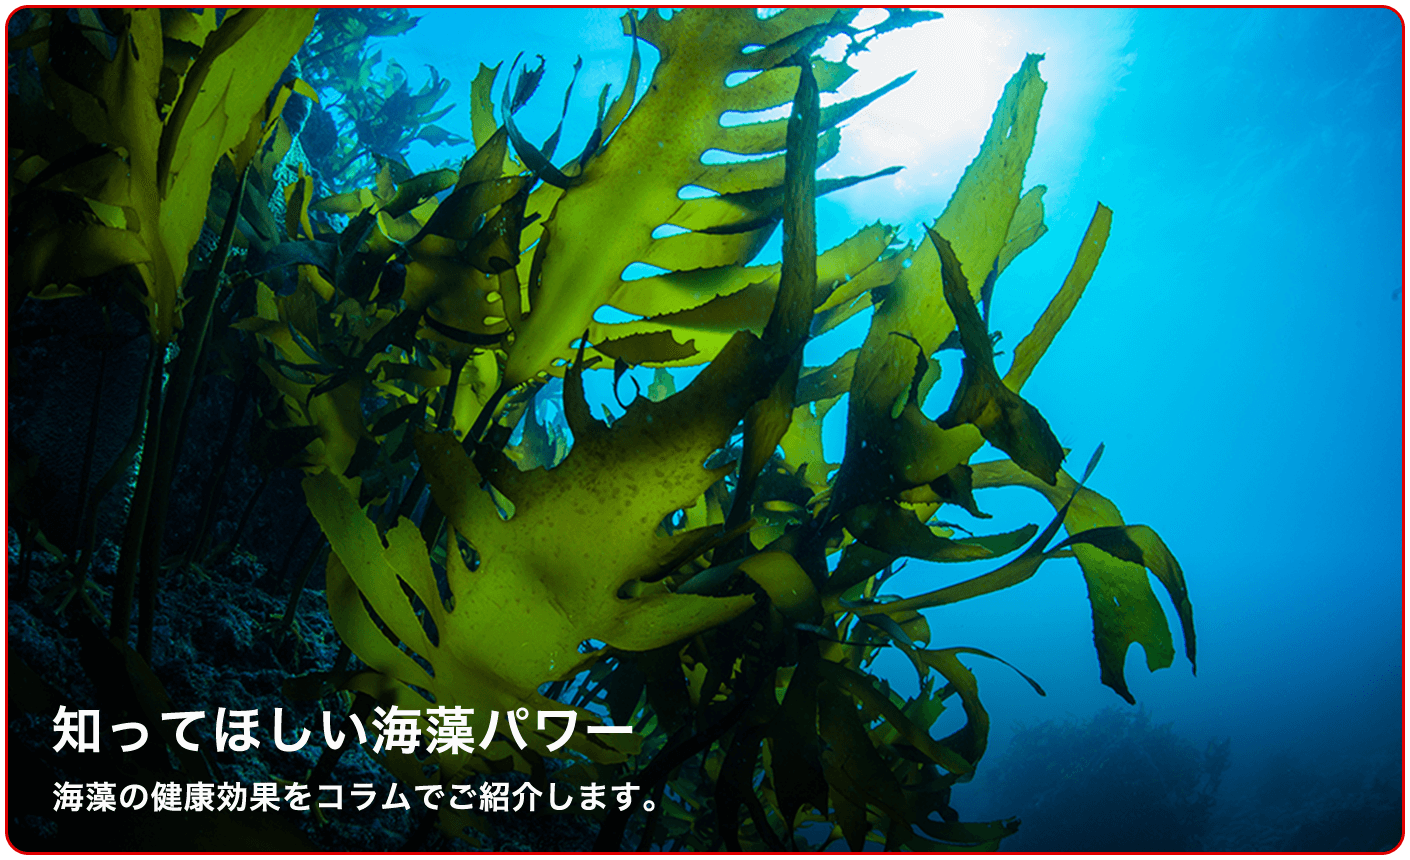 海藻コラム